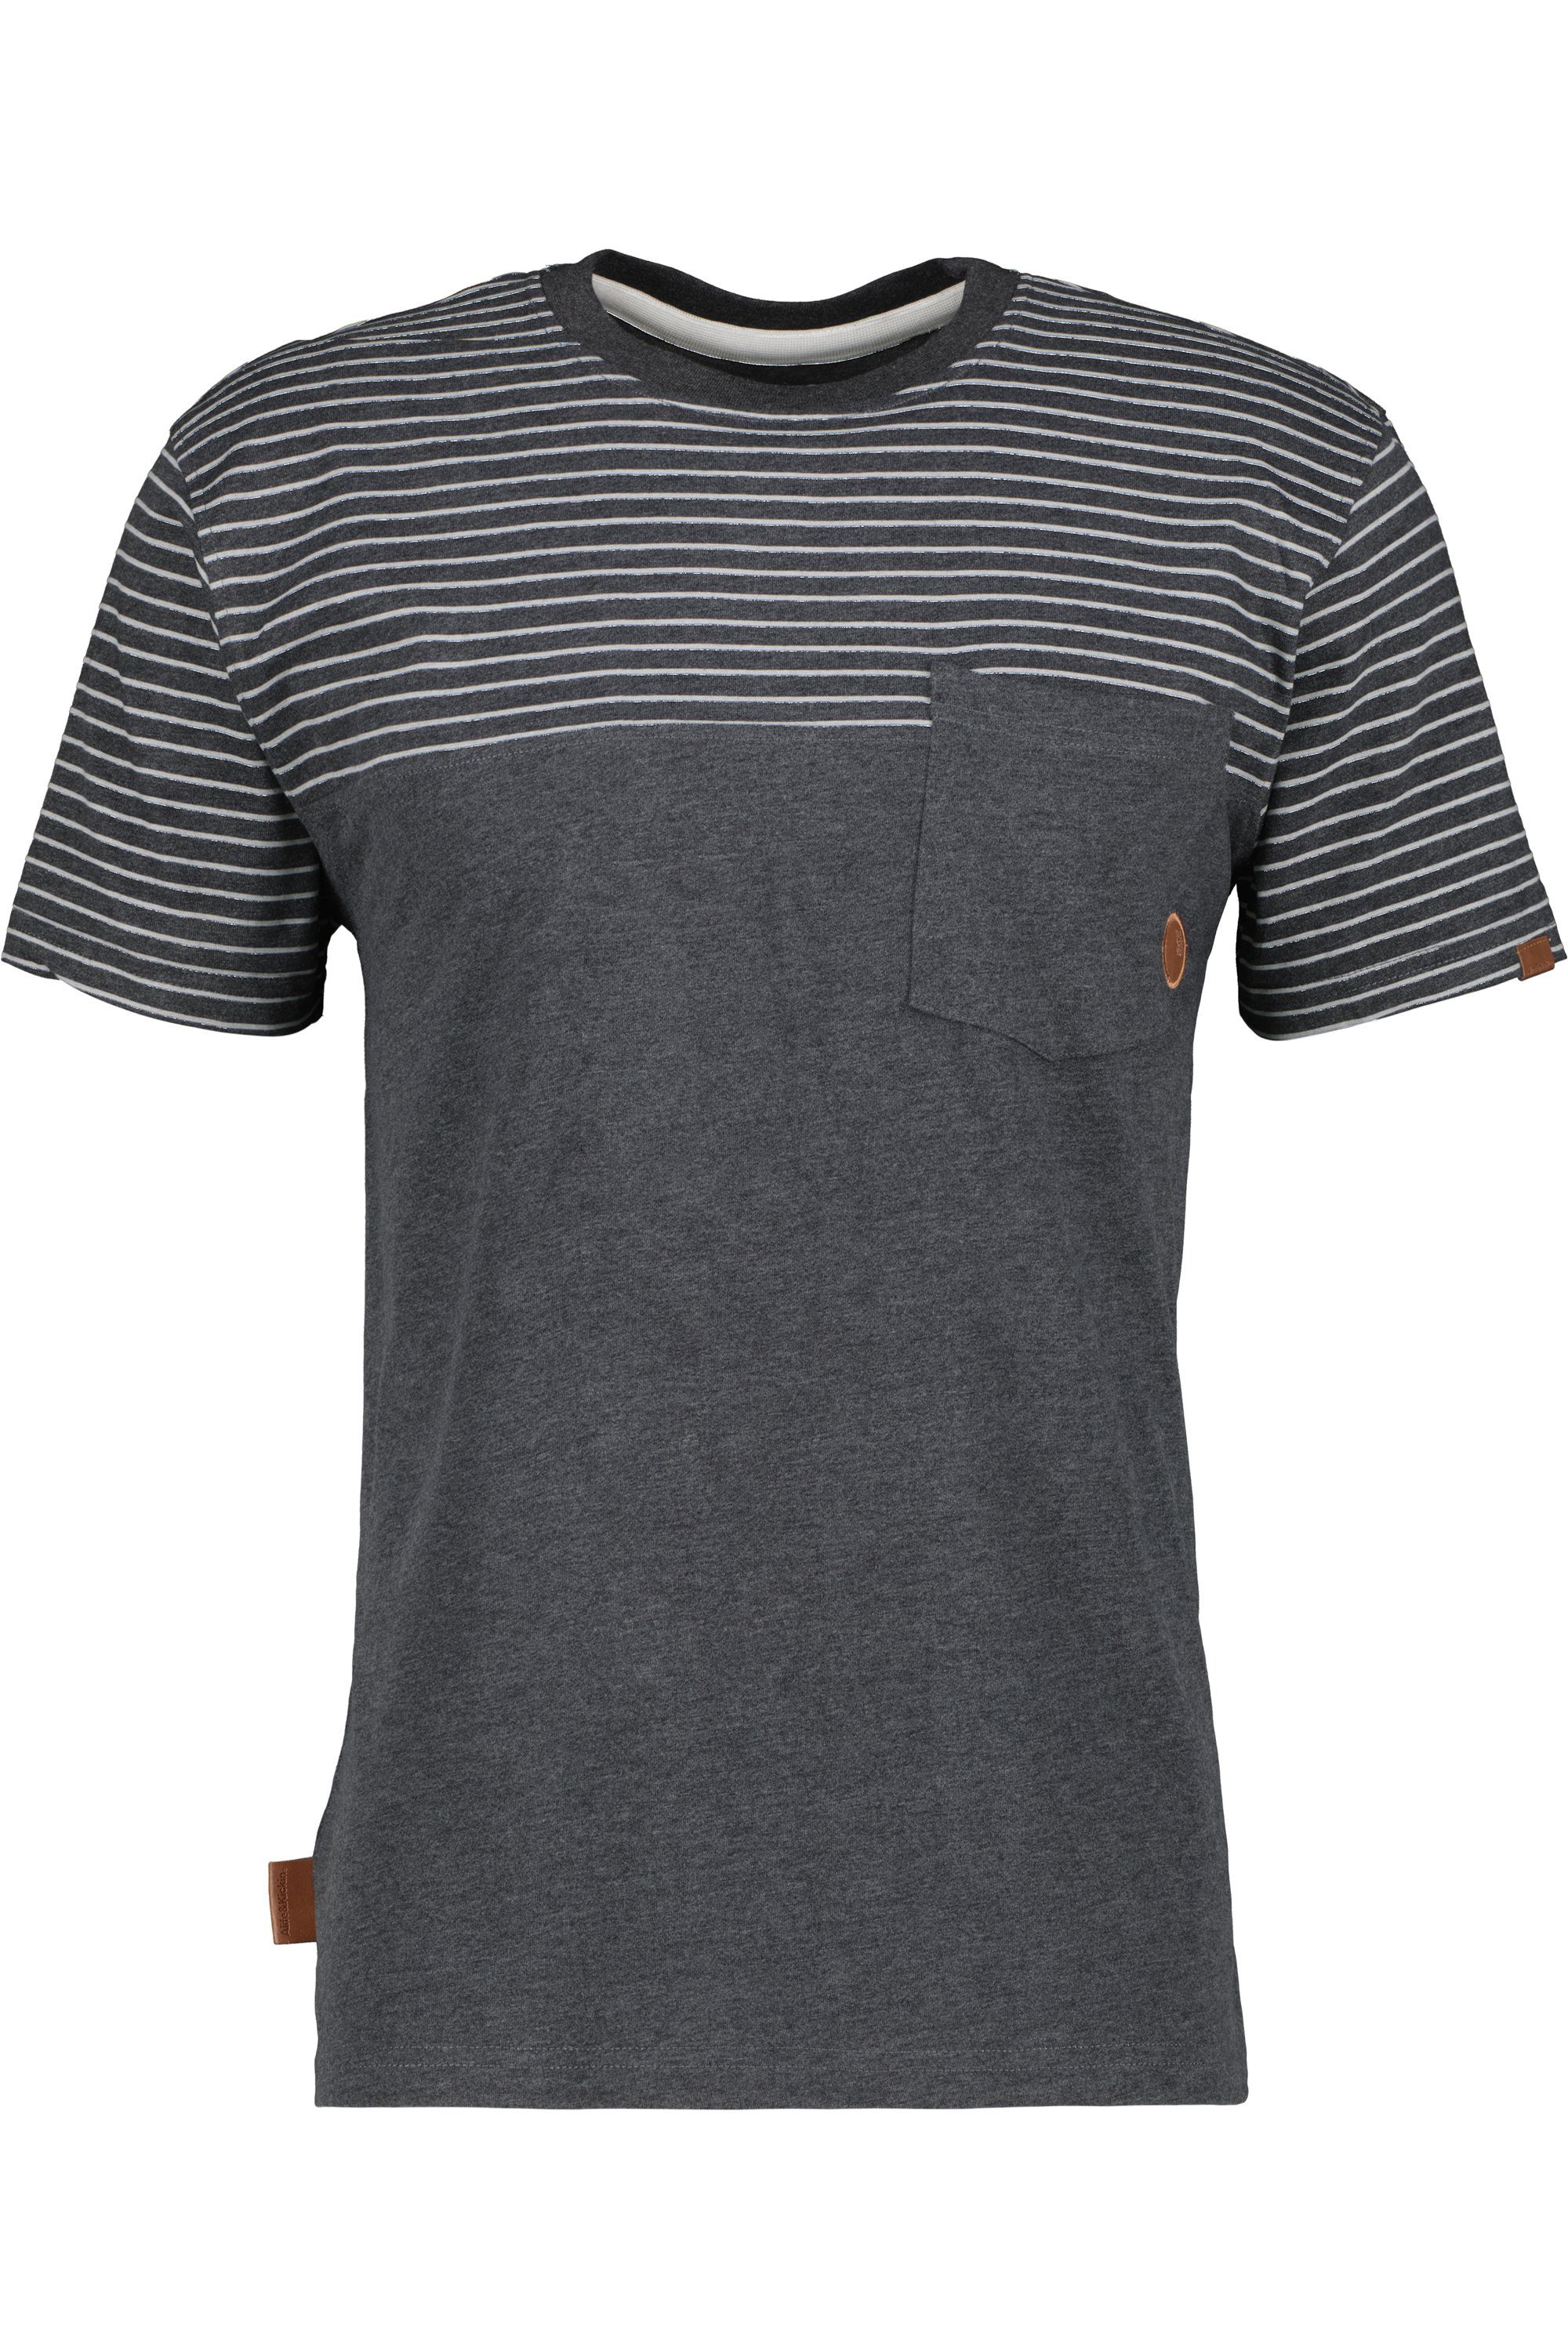 Z T-Shirt Alife & moonless Kickin T-Shirt melange LeopoldAK Herren Shirt